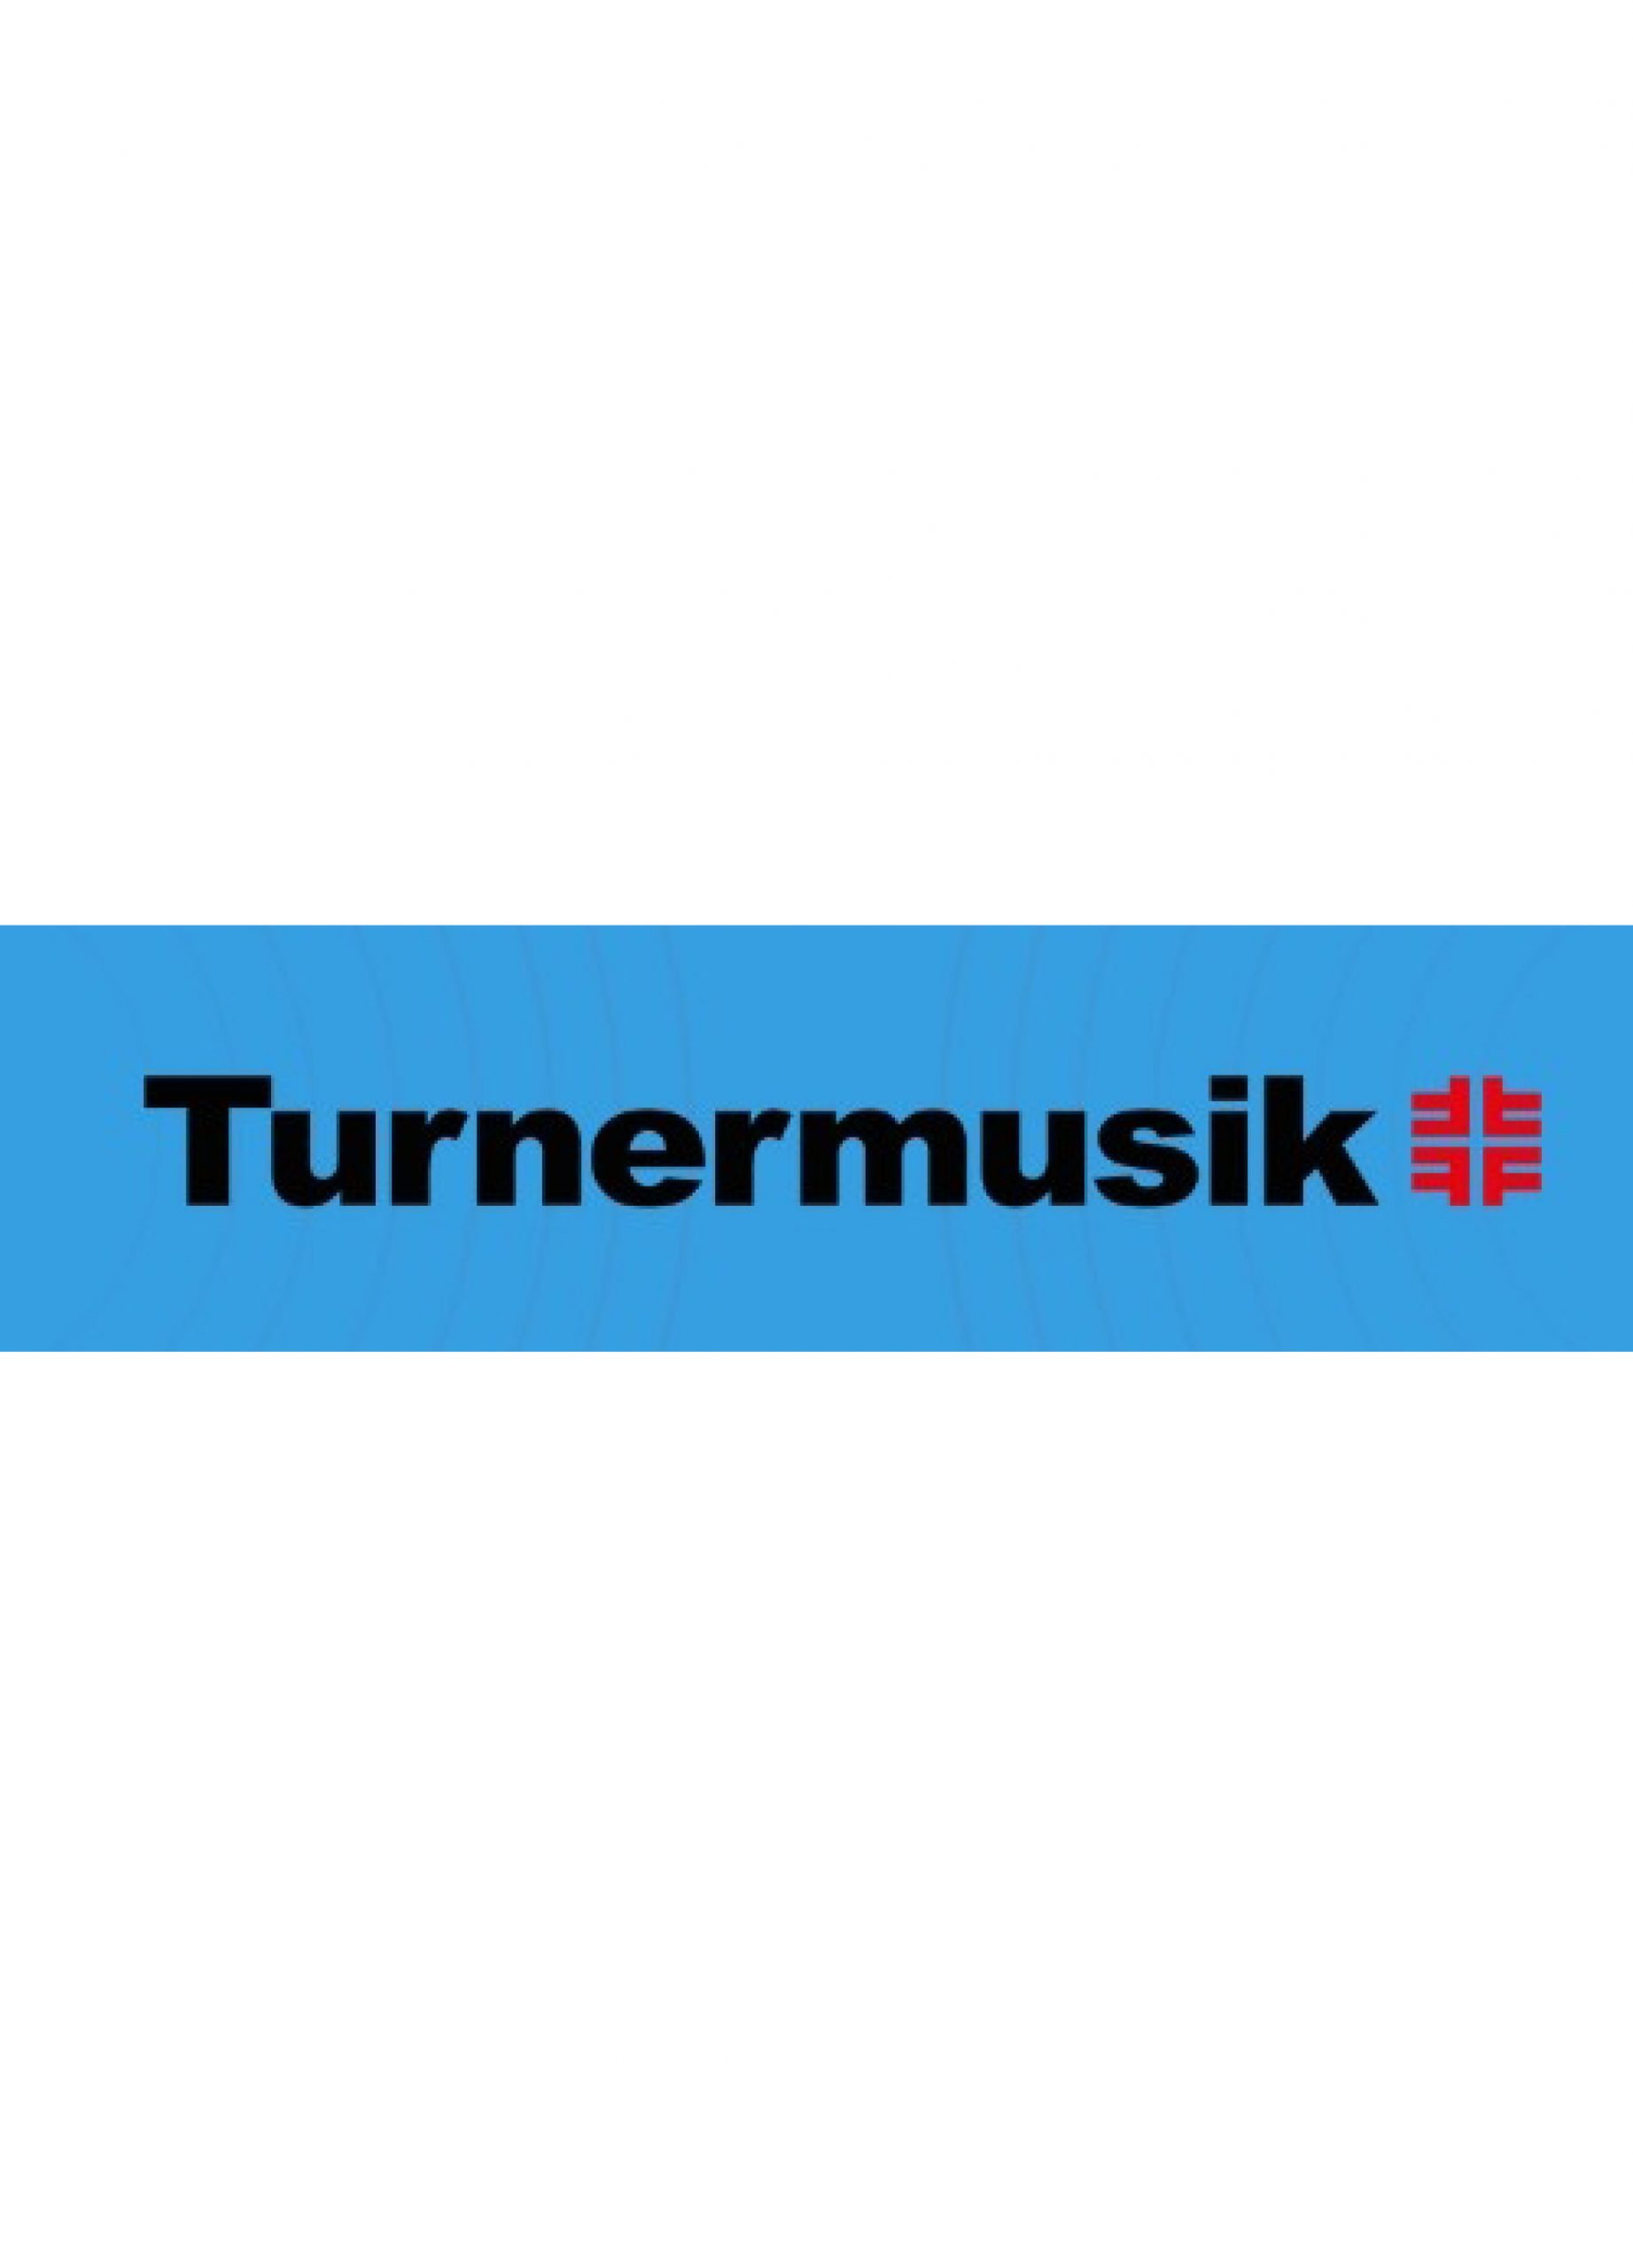 Turnermusik